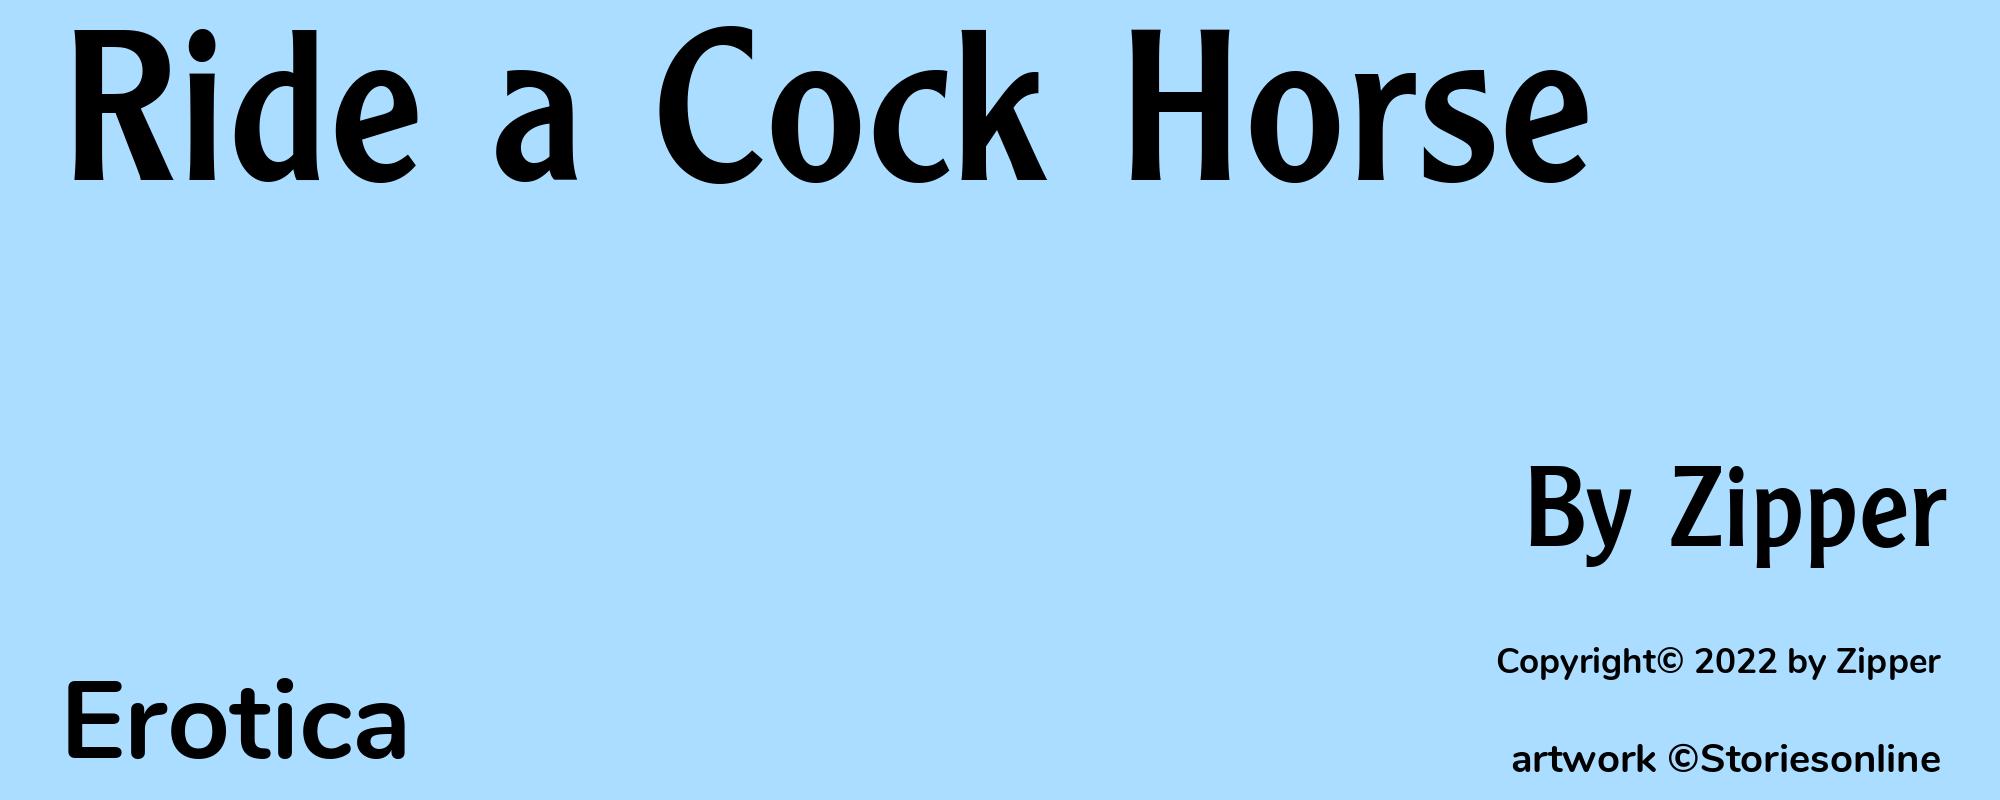 Ride a Cock Horse - Cover